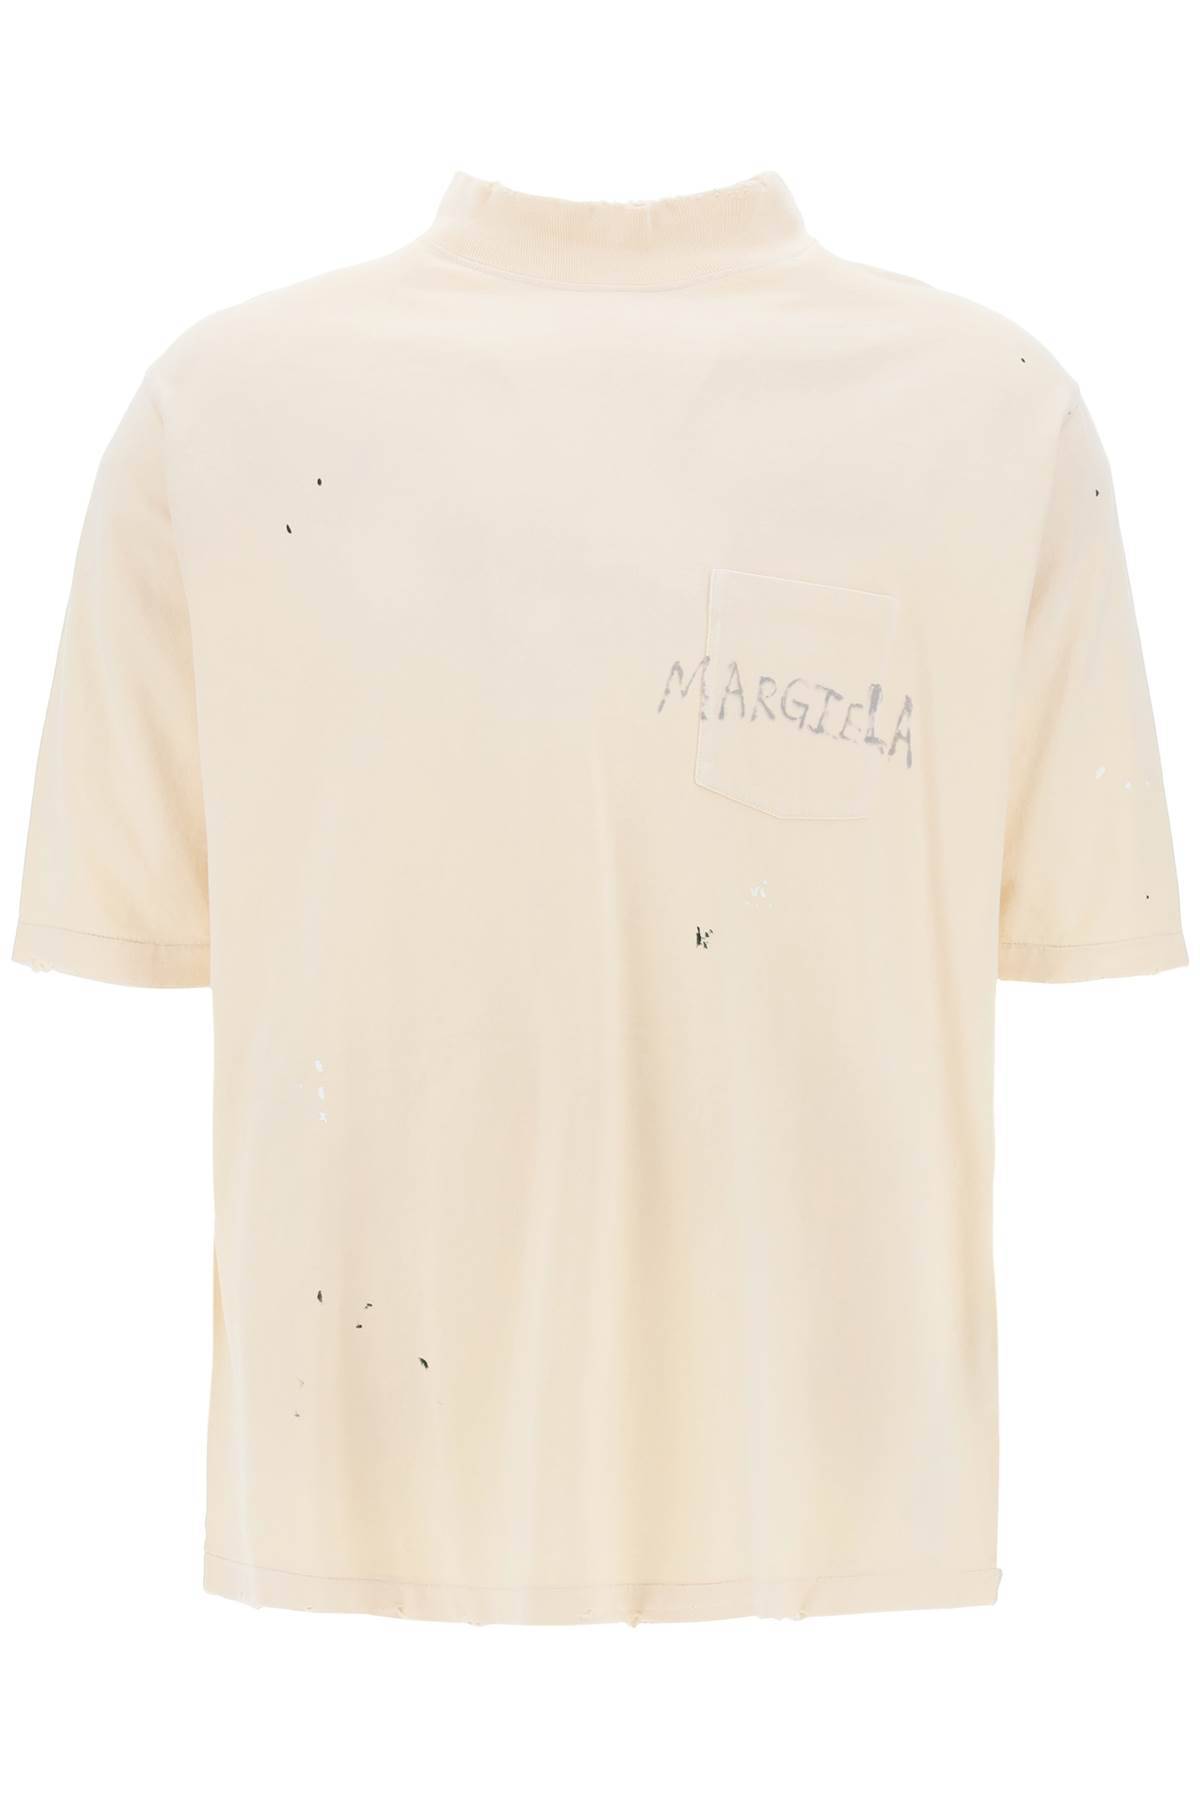 Maison Margiela MAISON MARGIELA handwritten logo t-shirt with written text